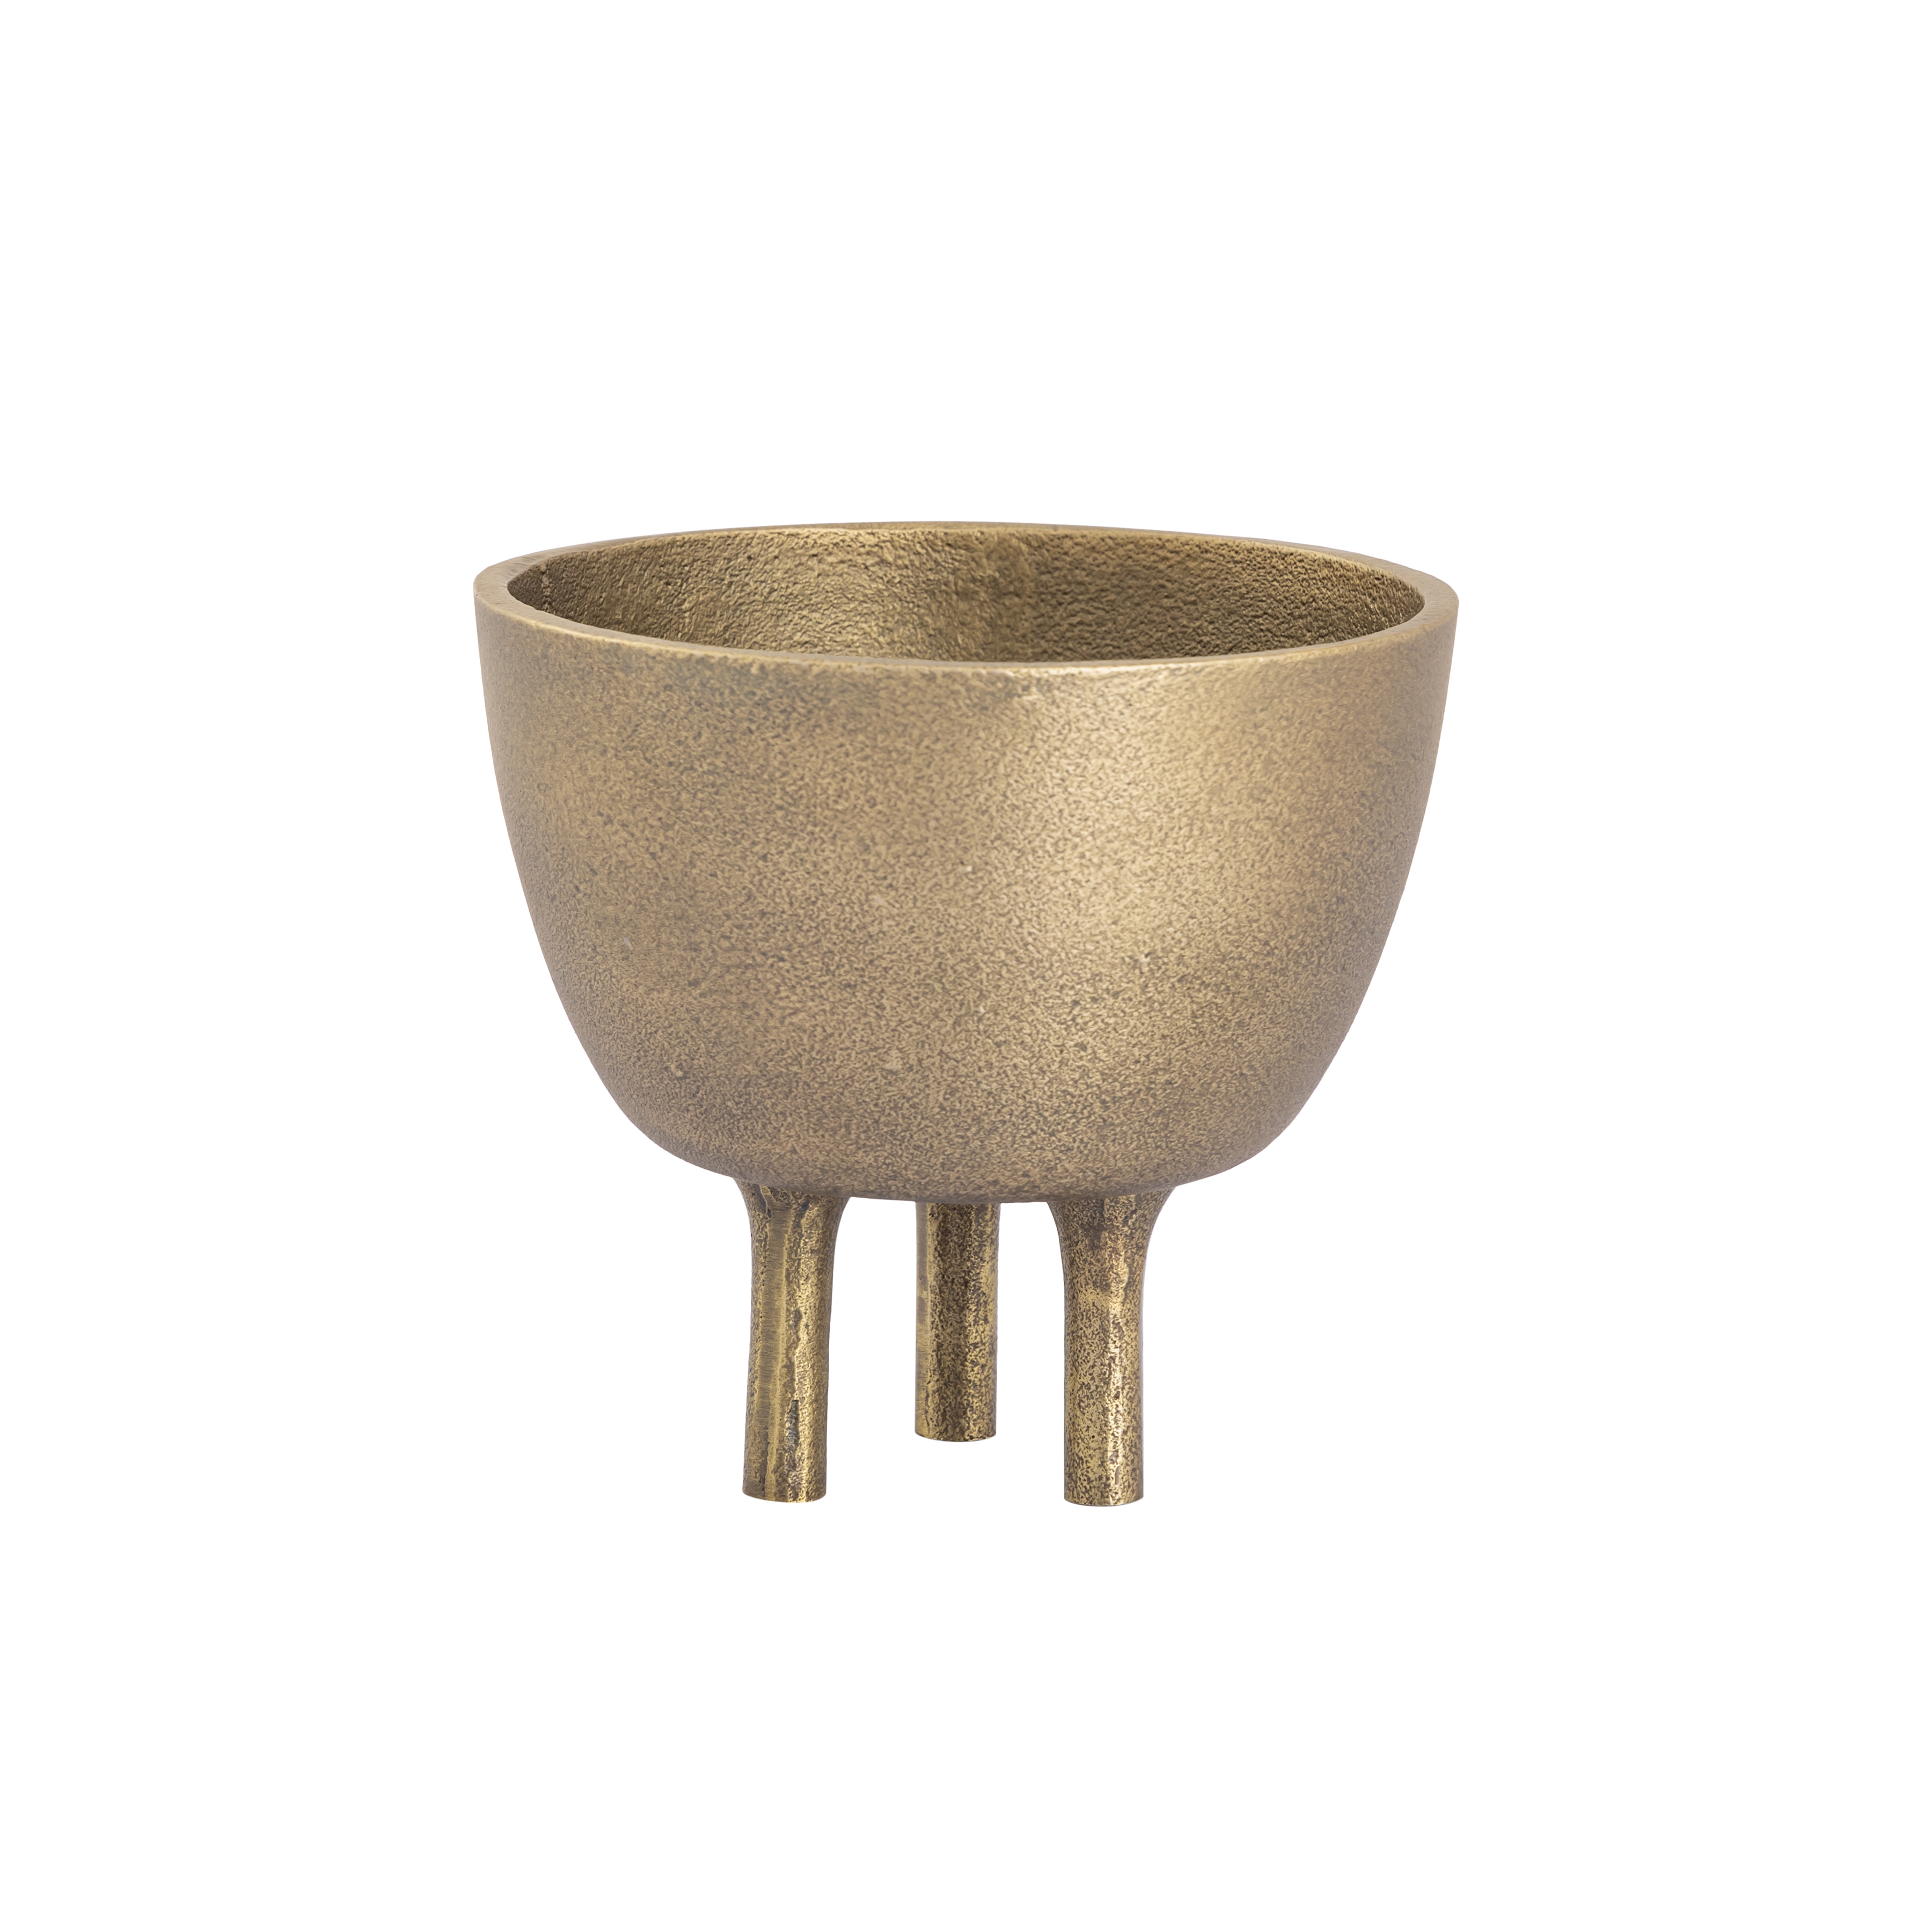 Kiser Bowl - Small Brass - Image 0